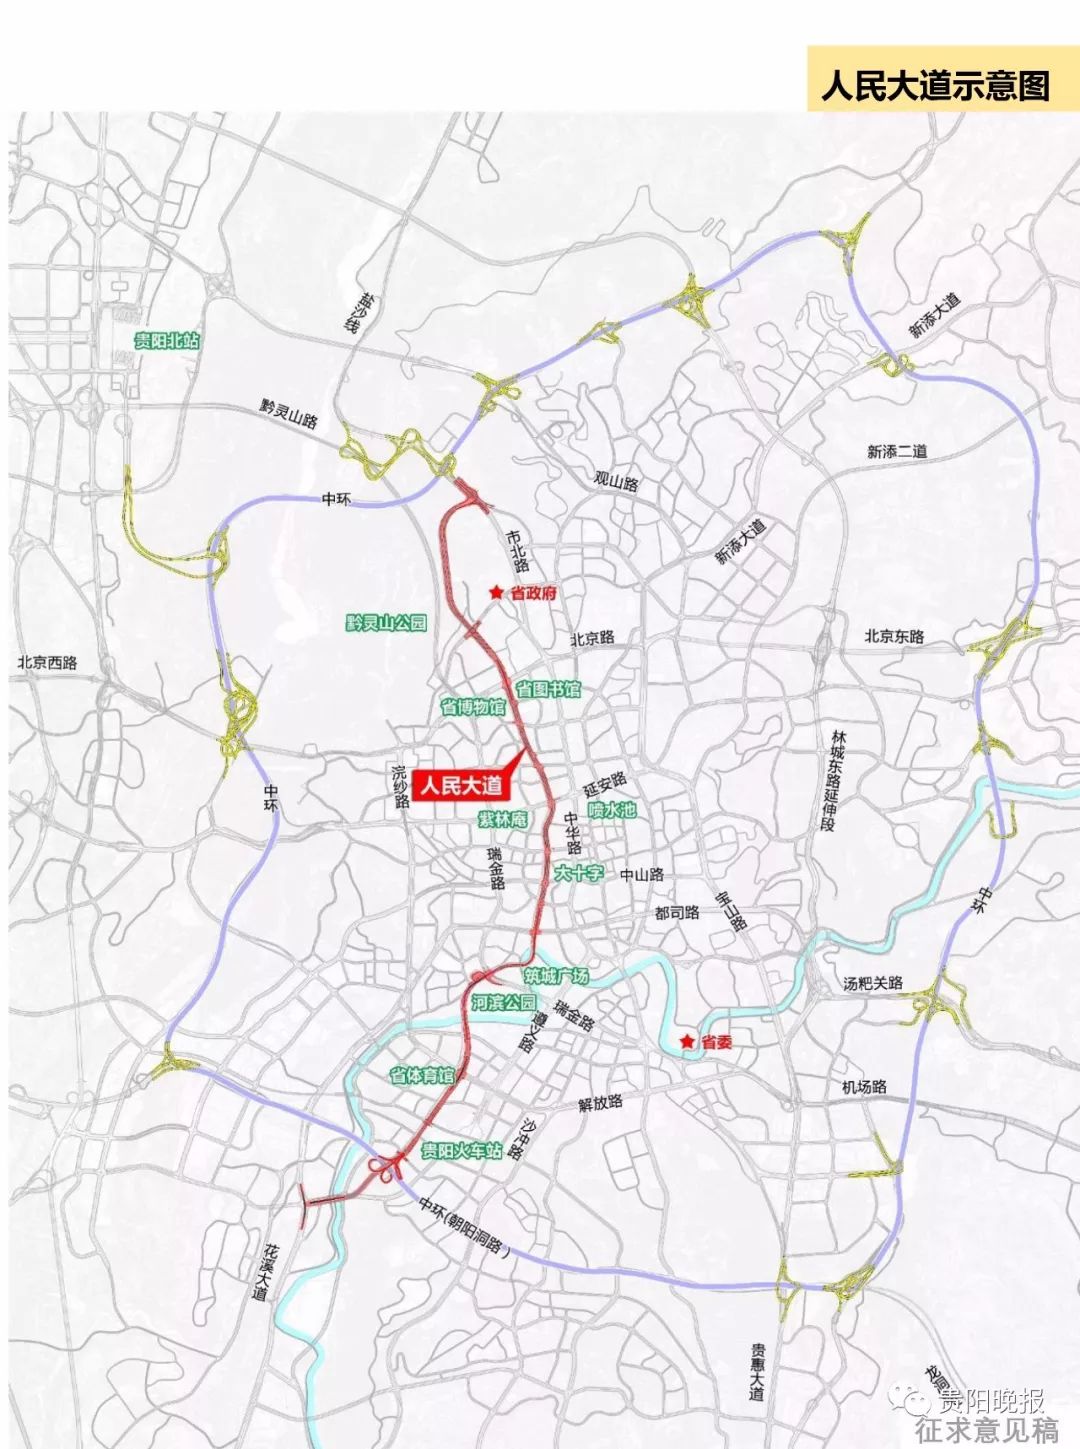 规划公示贵阳市将构建五环十八射用三年打造城乡交通网